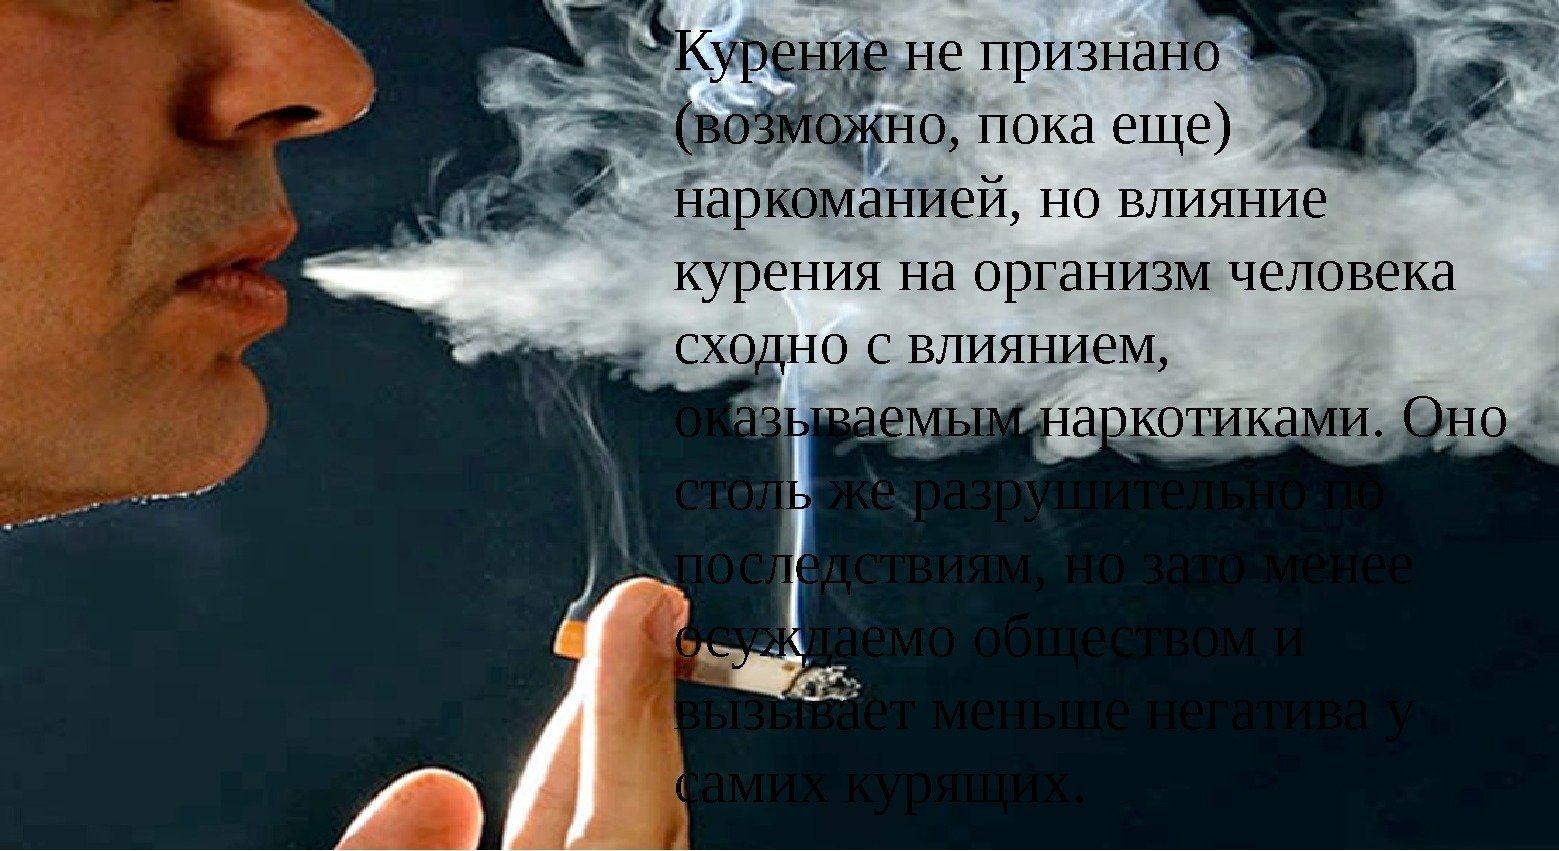 Курение не признано (возможно, пока еще) наркоманией, но влияние курения на организм человека сходно